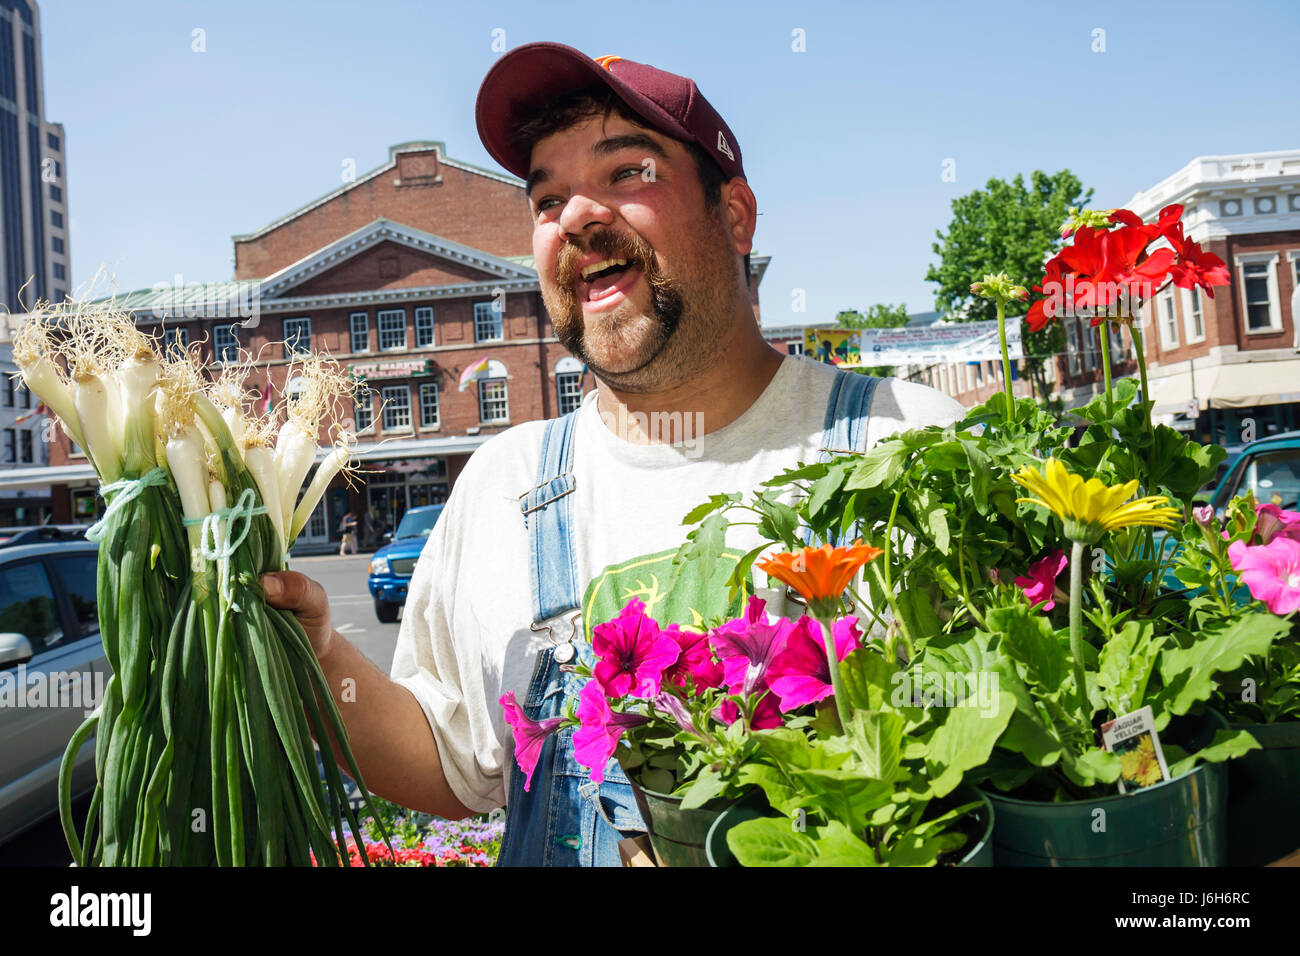 Roanoke Virginia,Market Square,Farmers' Market,homme hommes adultes adultes,produits locaux,légumes,fleurs,fleurs,plantes,combinaisons,pays,gale Banque D'Images